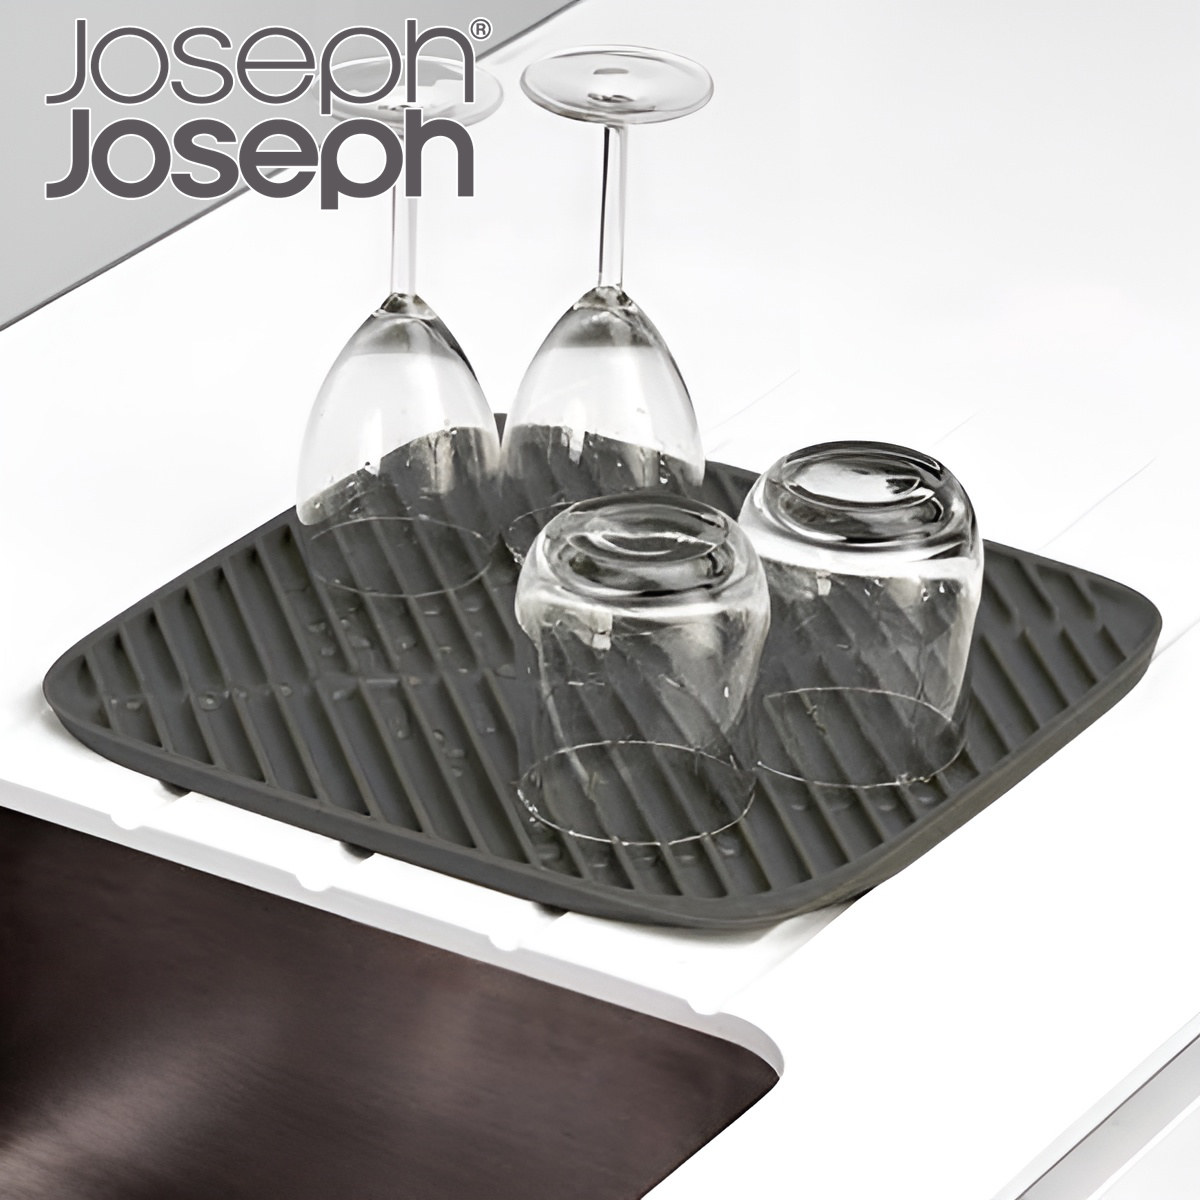 Joseph Joseph ジョゼフジョゼフ 食器乾燥用マット フルーム スモール 水切りマット